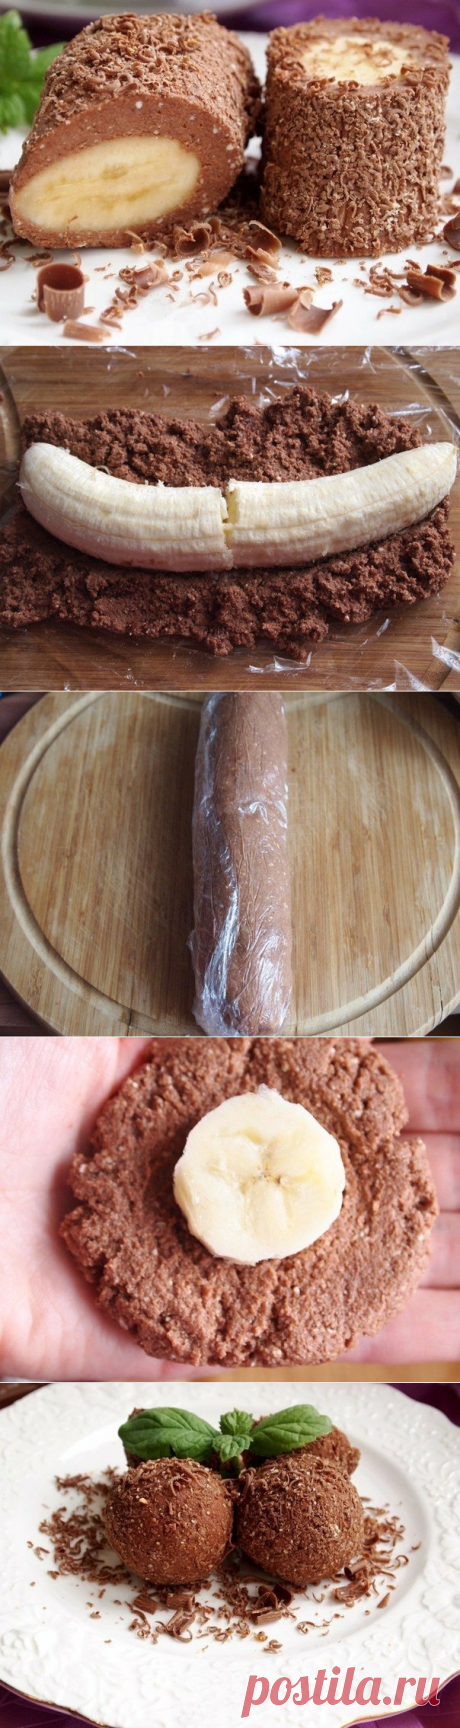 Творожно-шоколадный десерт с бананом - Простые рецепты Овкусе.ру